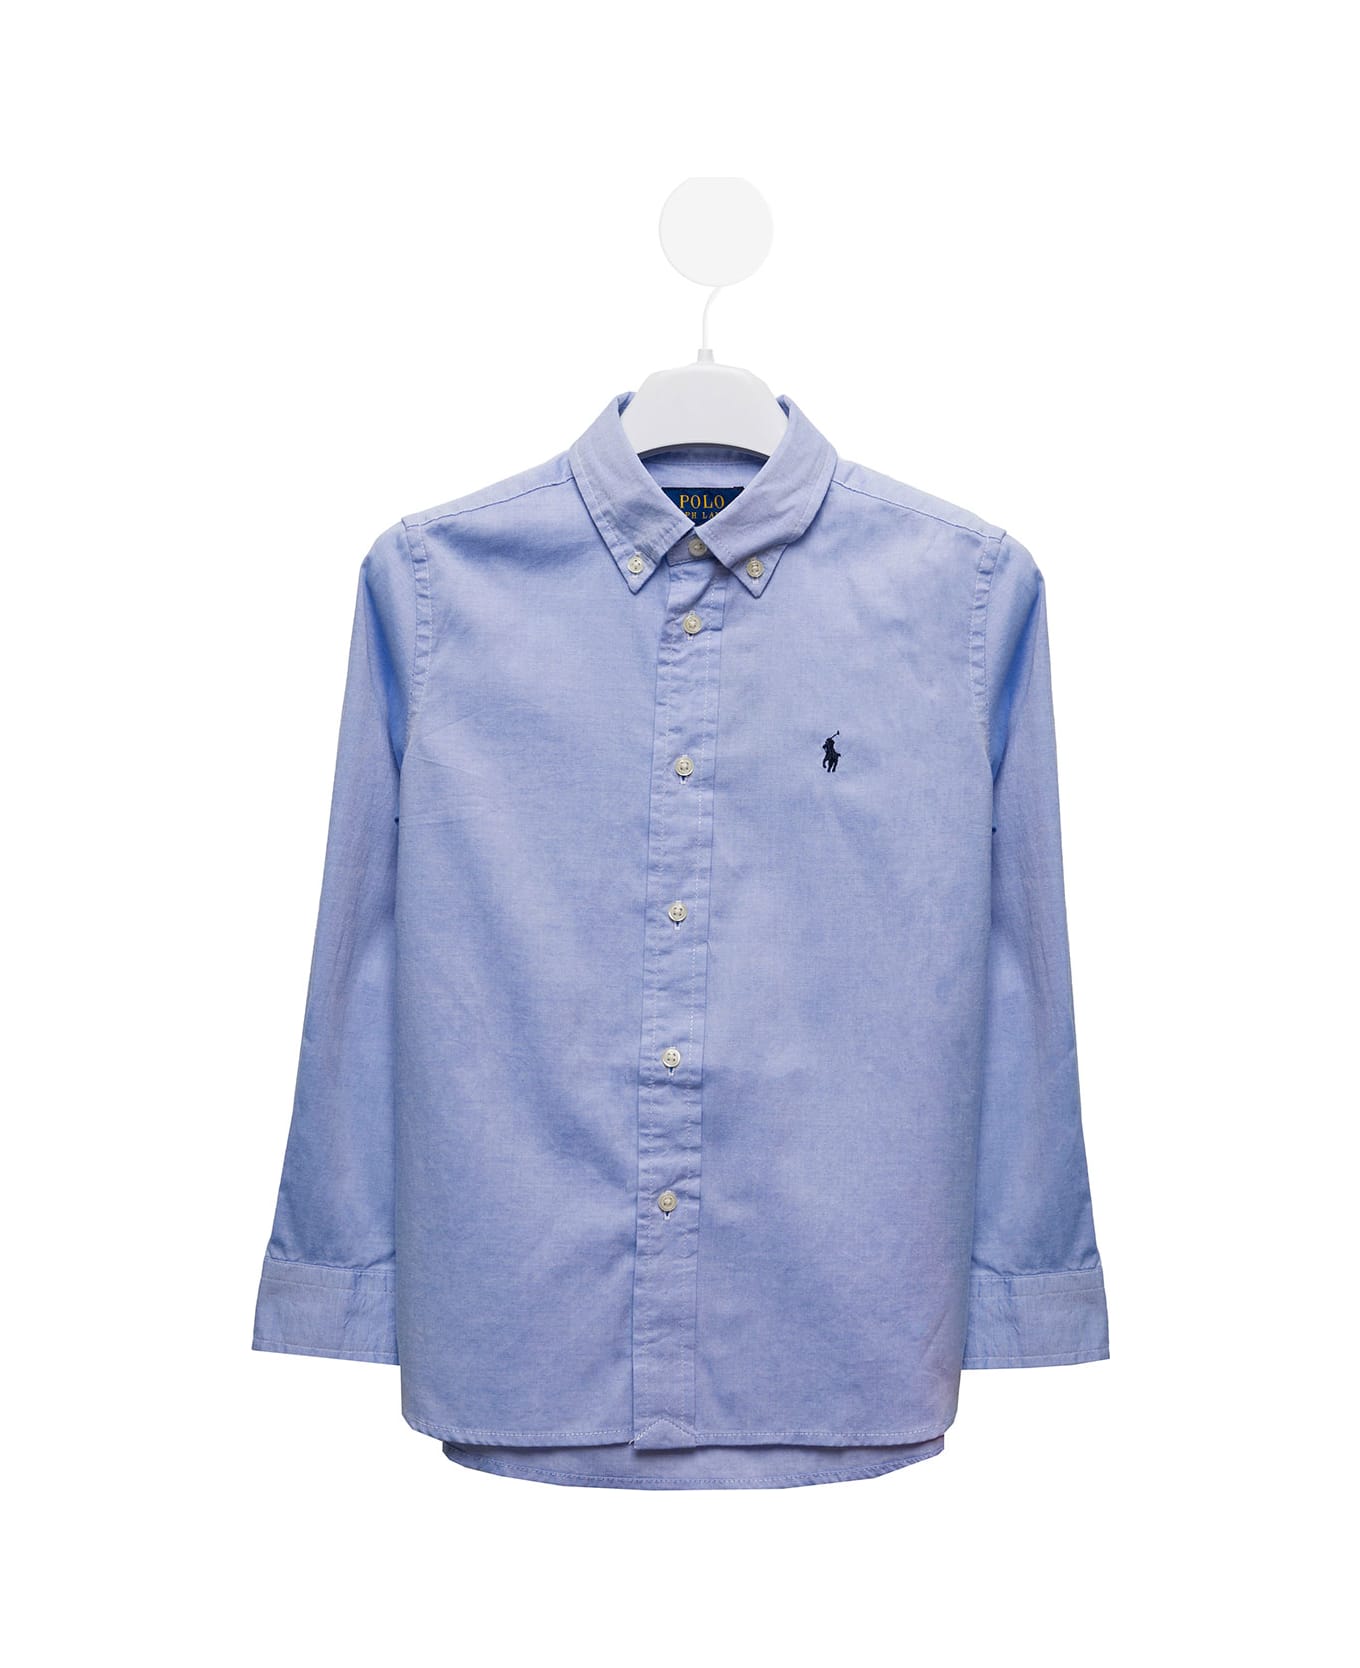 Ralph Lauren Light Blue Cotton Poplin Shirt With Logo Kids Boy - LIGHT BLUE